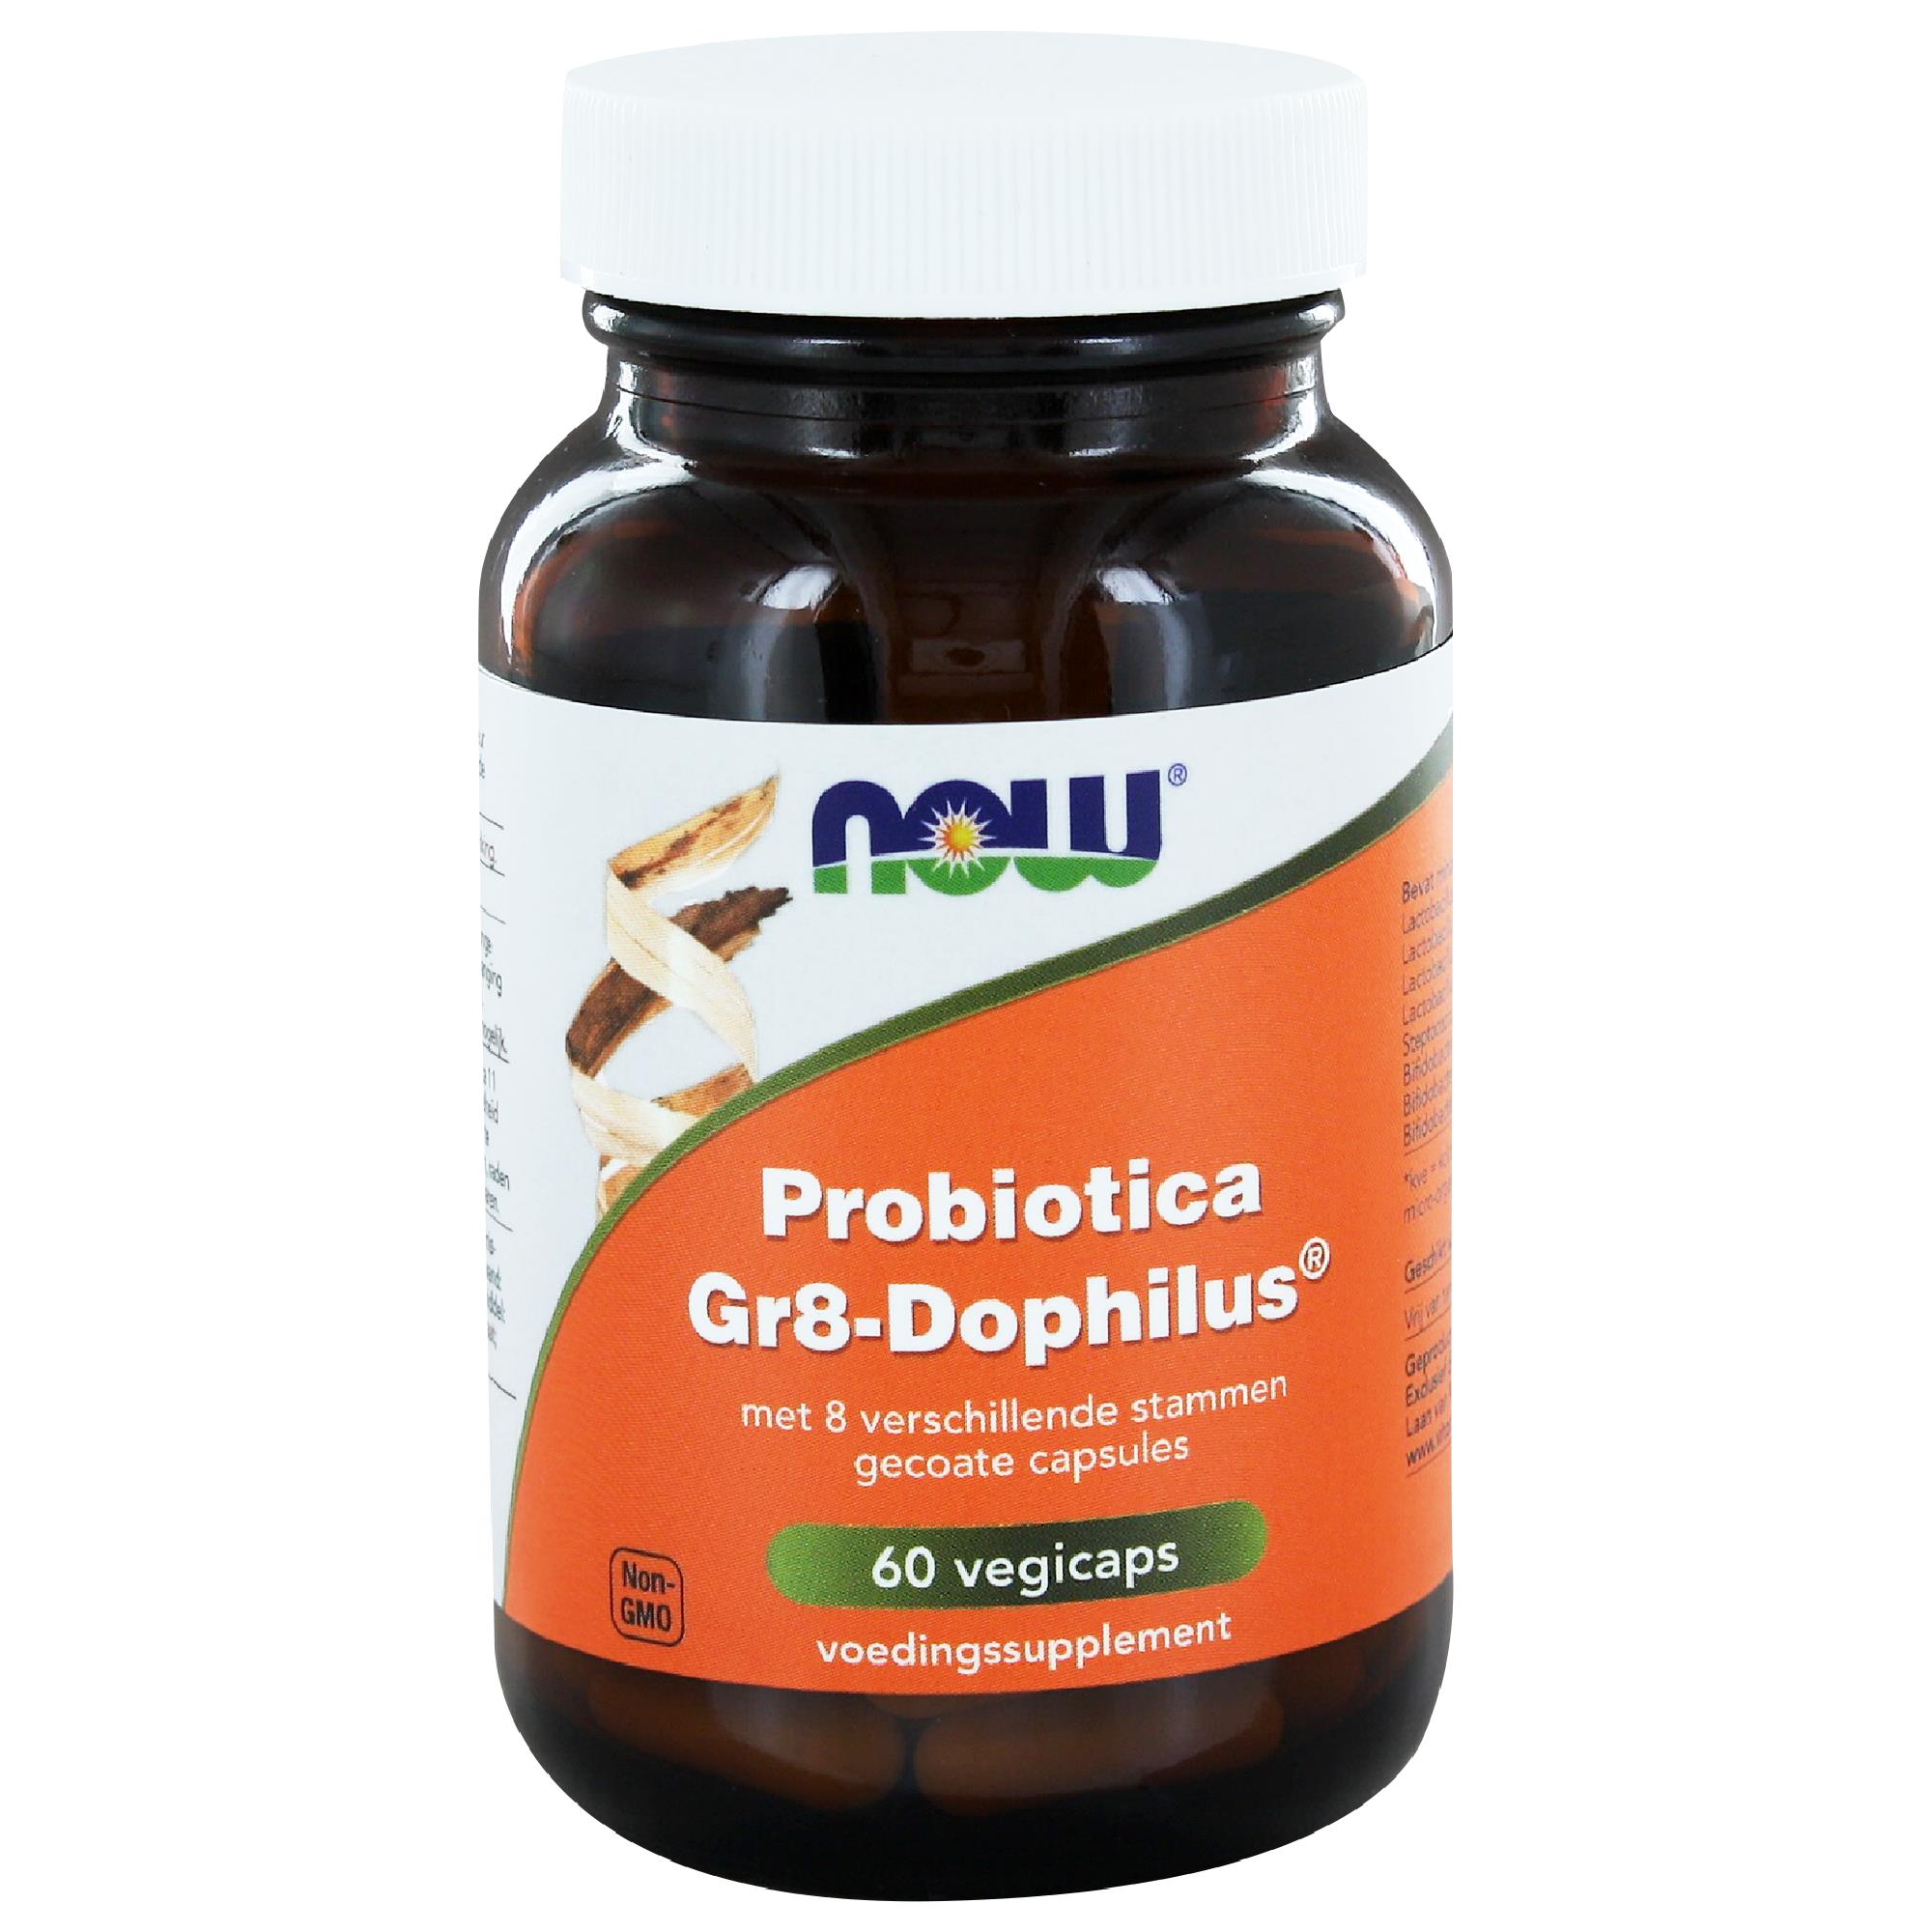 Probiotica -Gr8-Dophilus - 60 Vegcaps